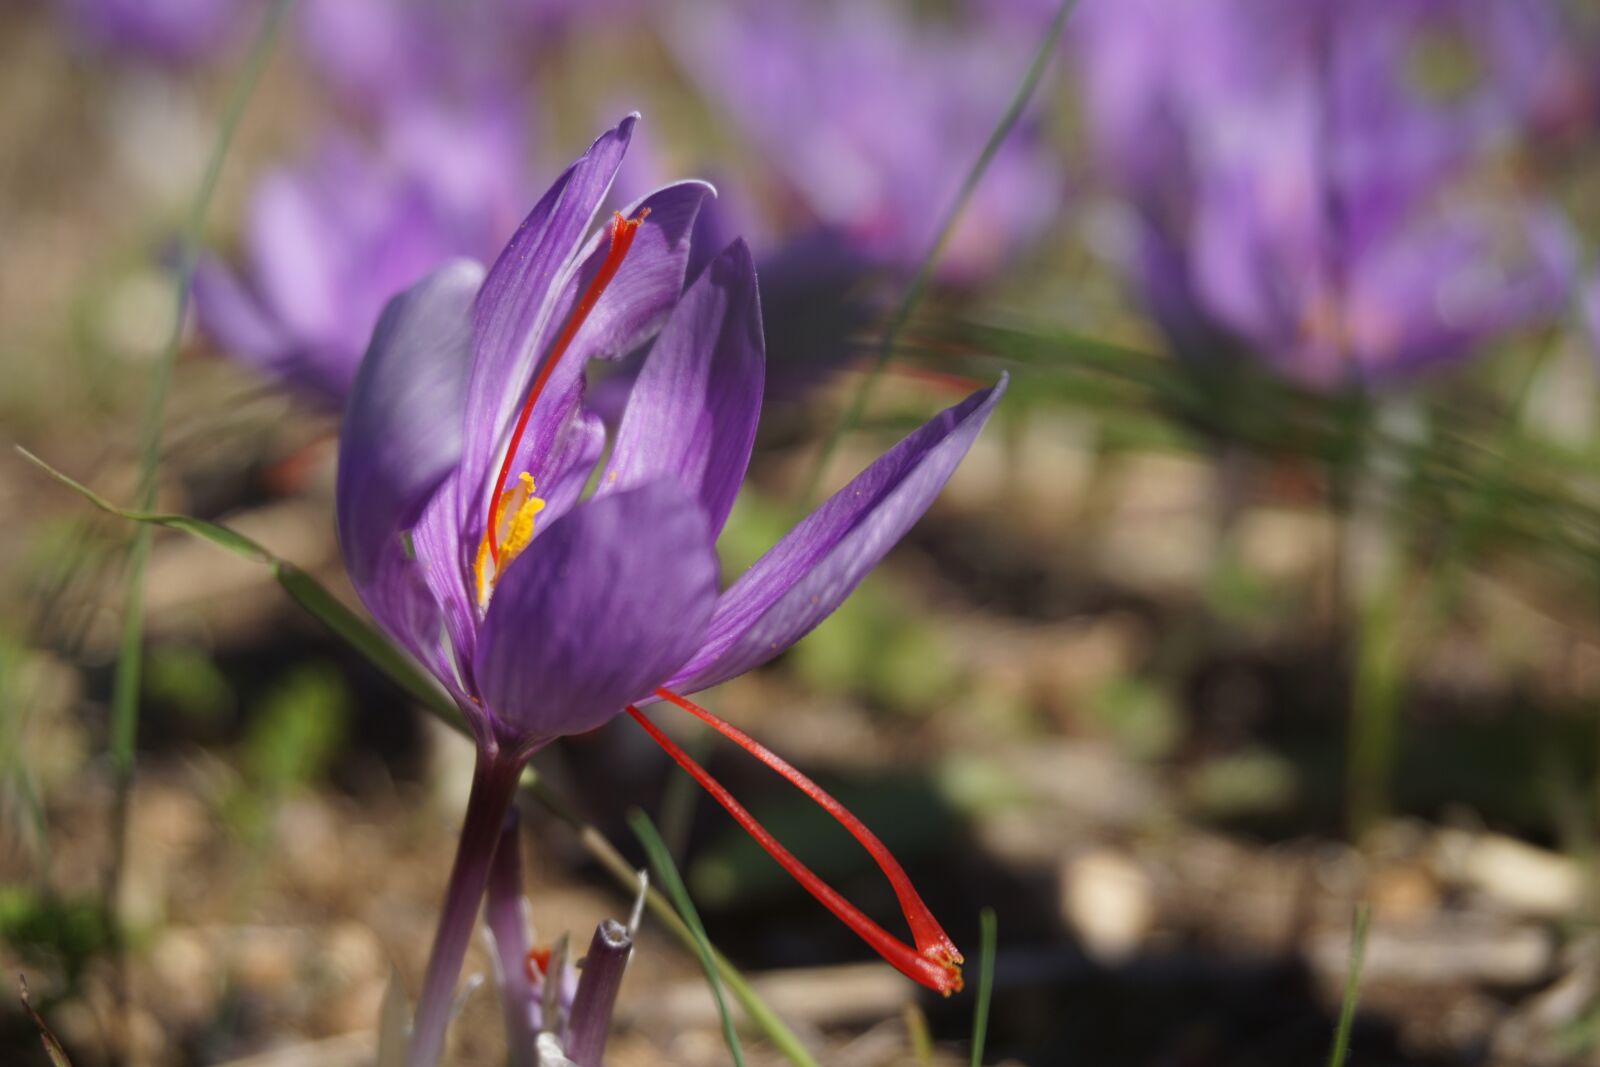 Sony a6000 sample photo. Saffron, crocus sativus, harvest photography